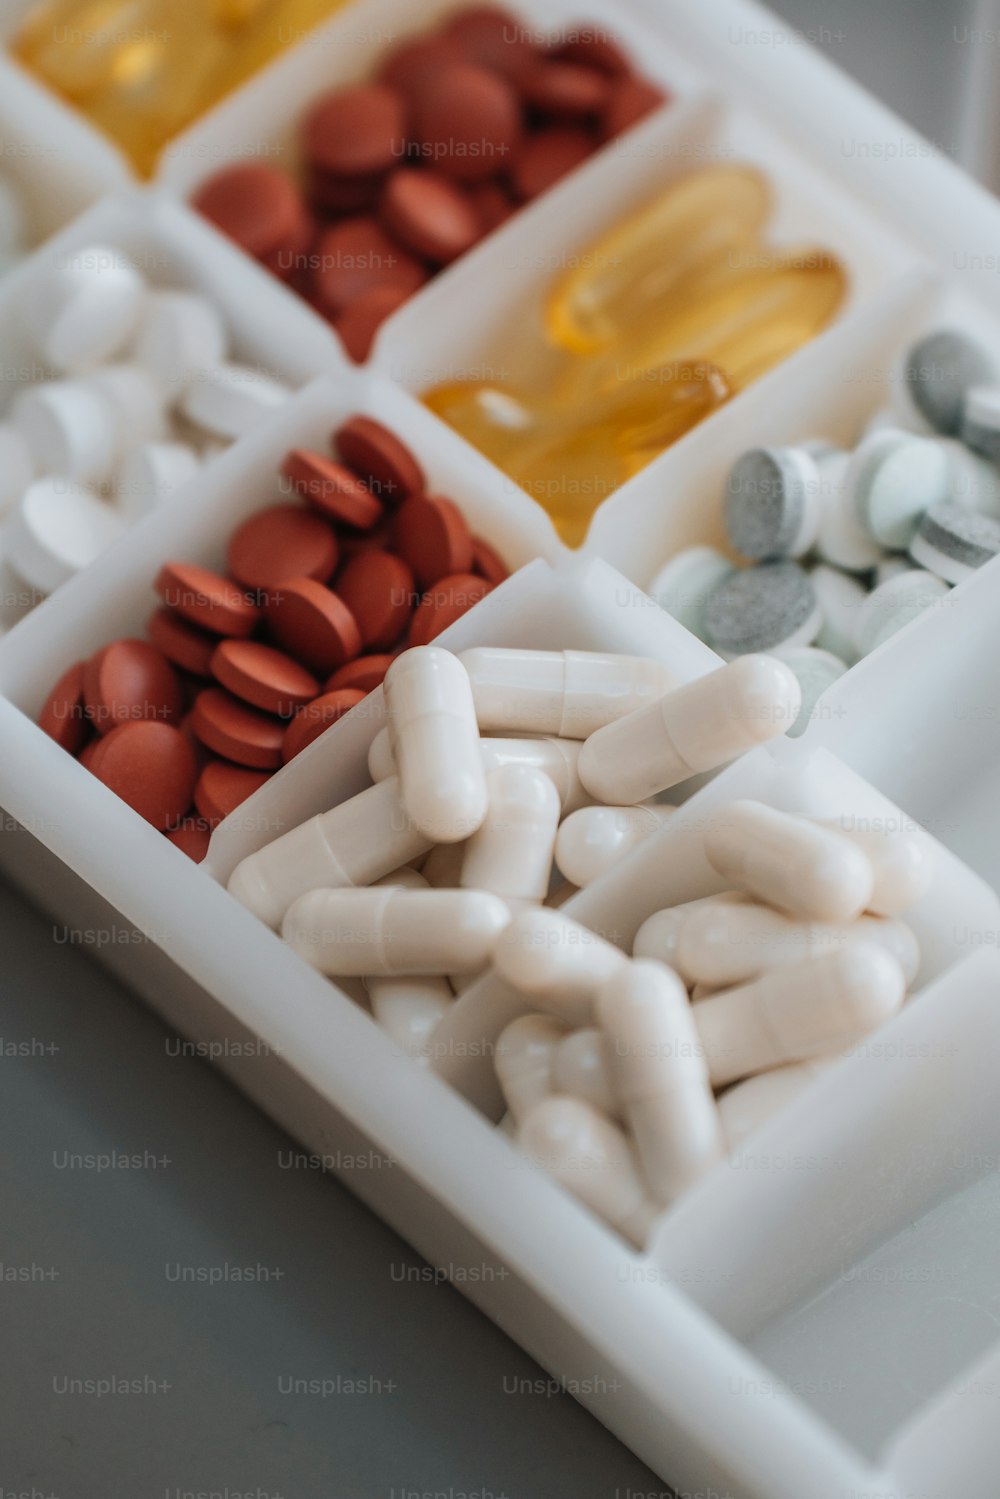 un plateau blanc rempli de pilules et de capsules